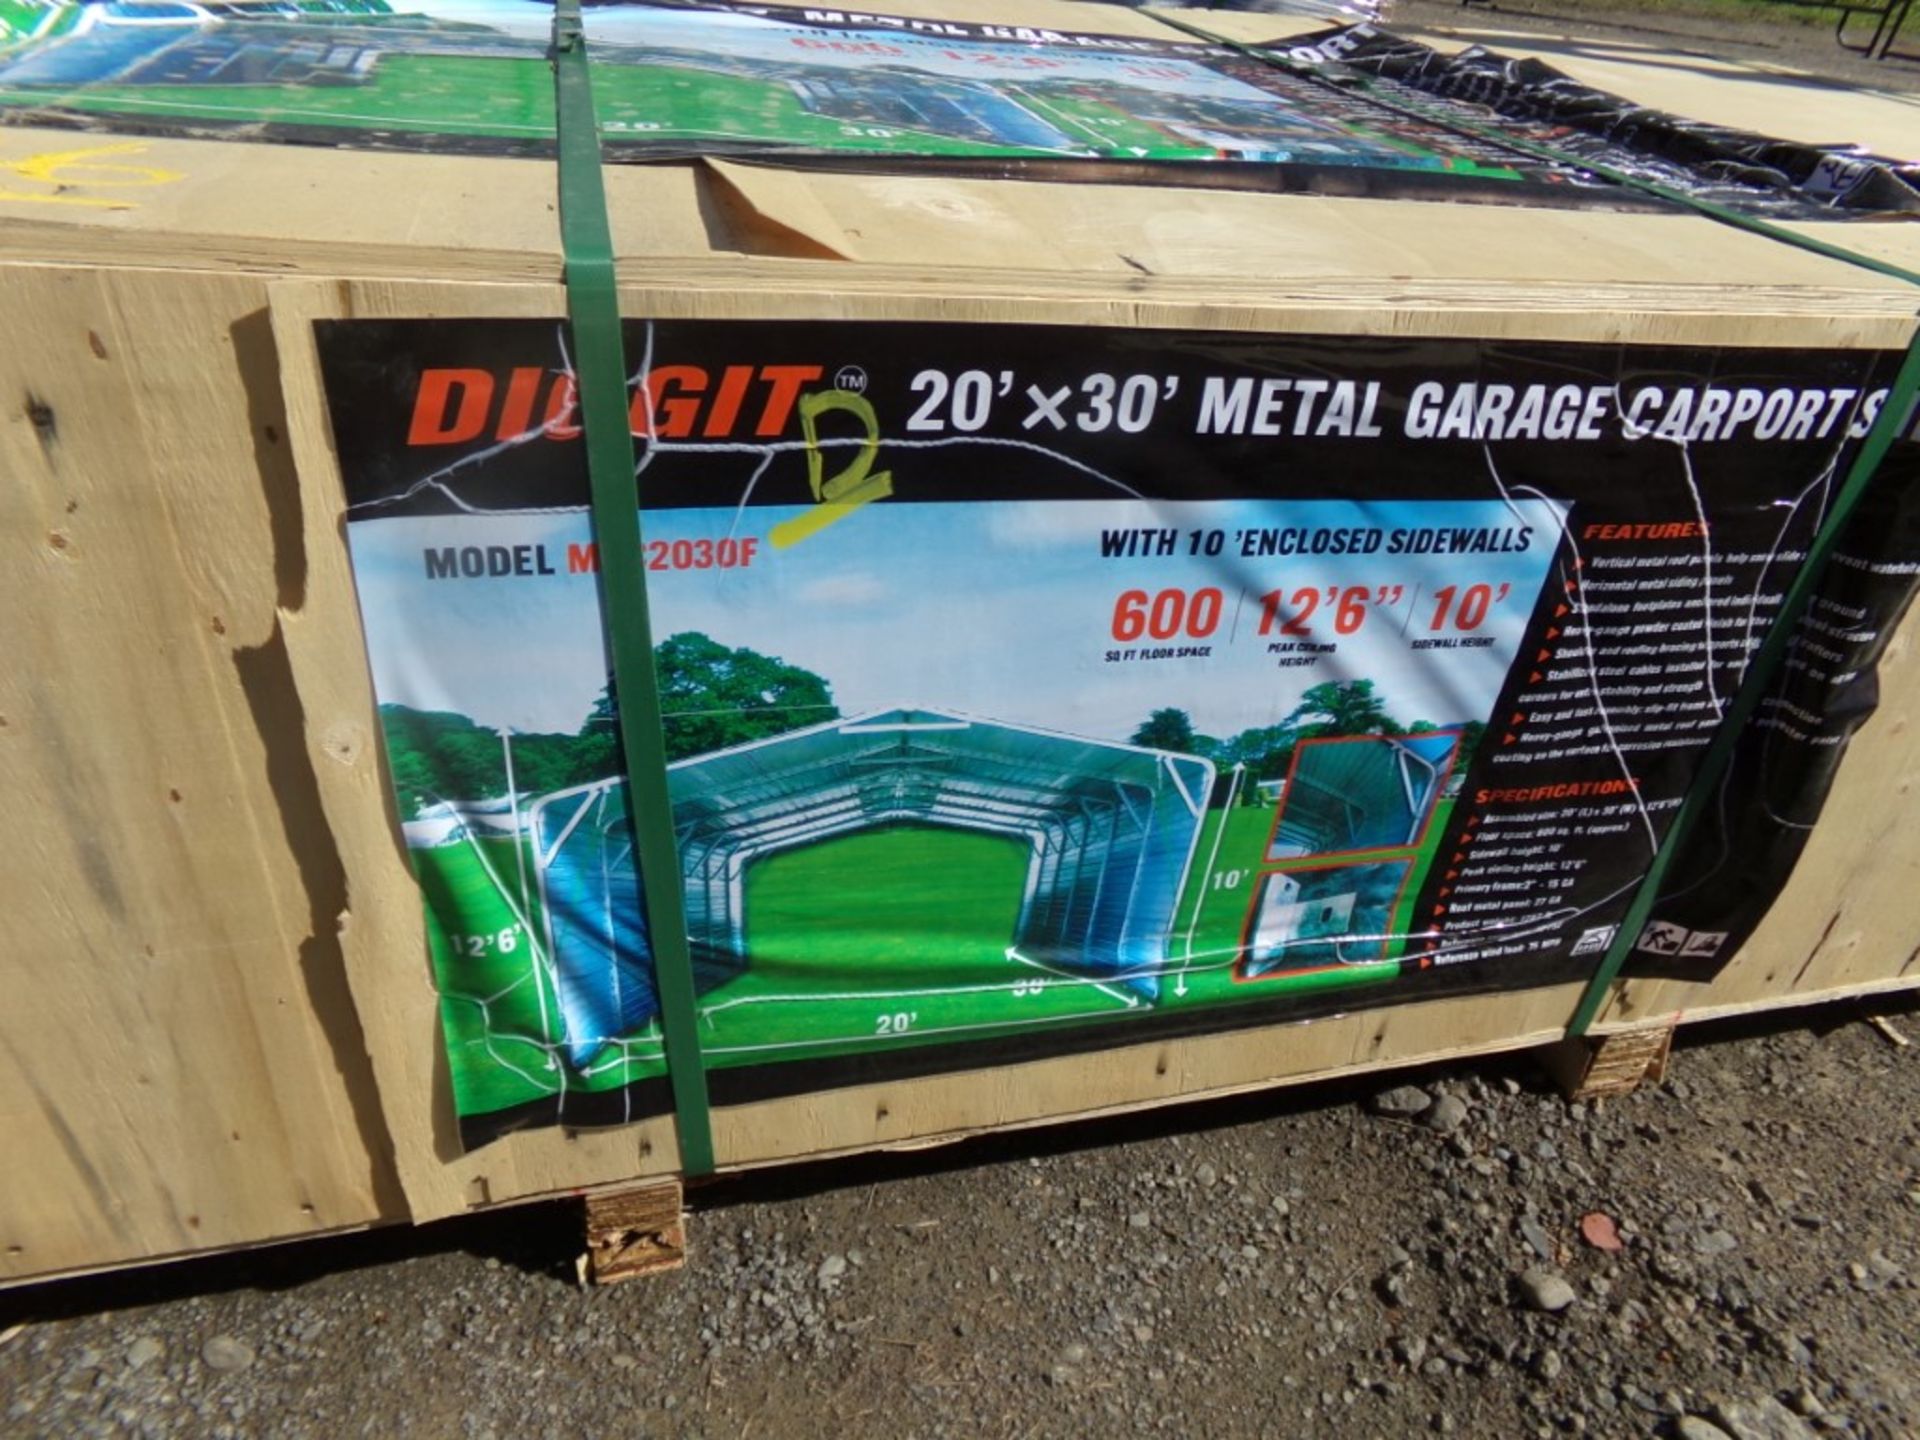 New Diggit 20' x 30' Metal Garage/Carport/Shed, 12'6'' Tall with 10' Sidewalls - Bild 2 aus 2